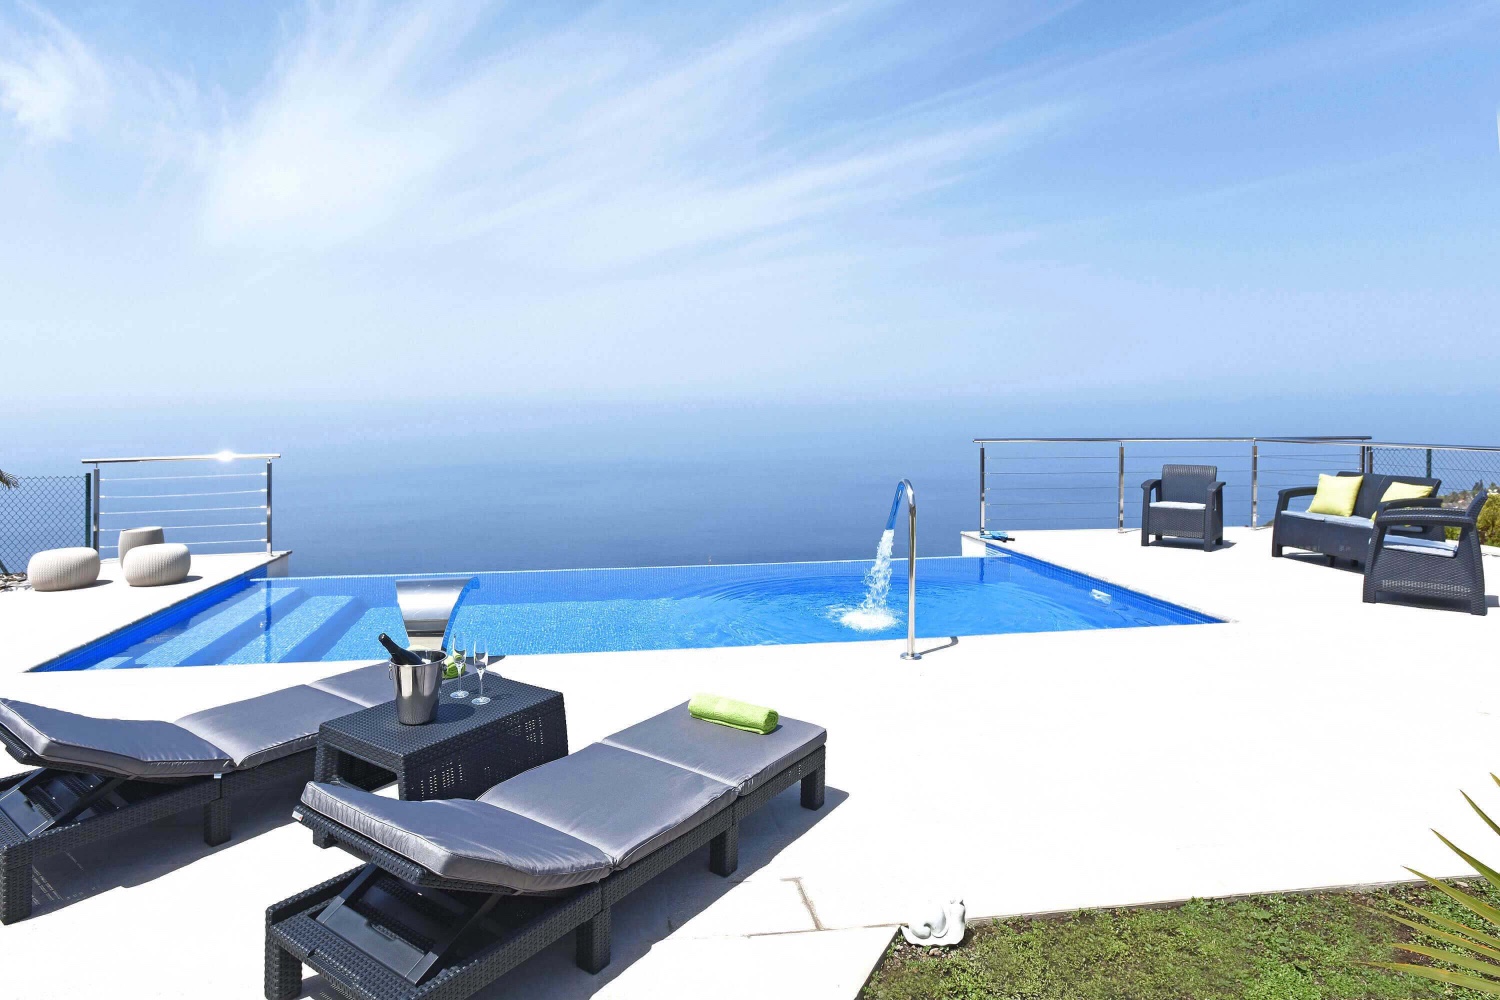 Casa de vacaciones recientemente renovada de estilo moderno en la zona bonita de Tijarafe con terraza amplia con piscina y vistas panorámicas al mar